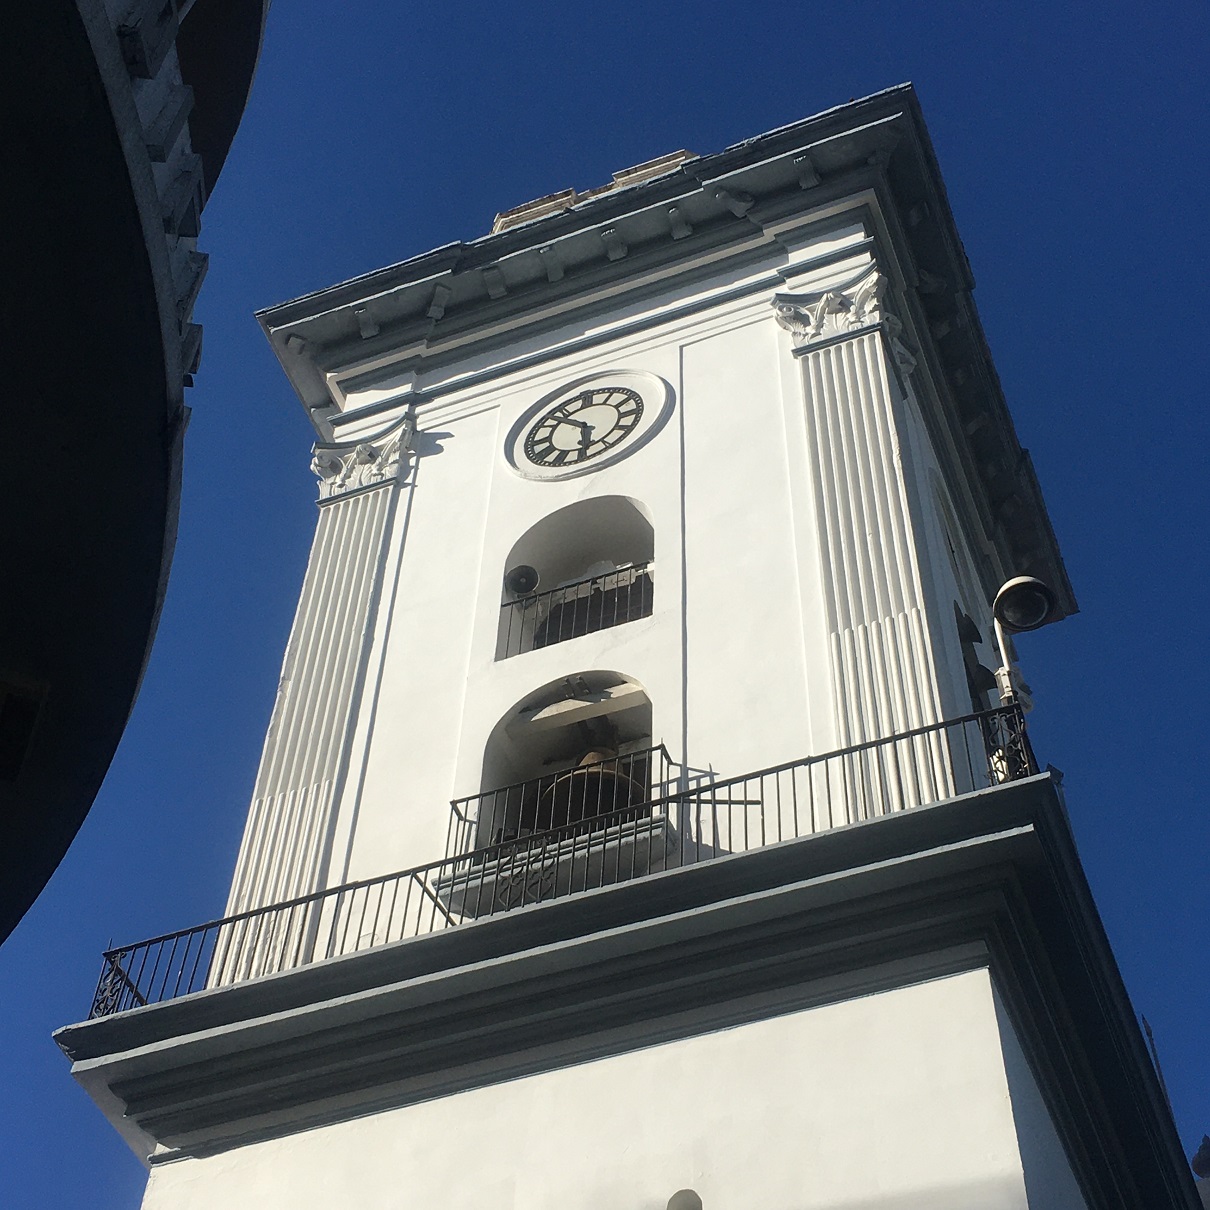 El reloj cuyos secos latidos estamos oyendo ahora fue colocado en la torre en el año de 1889 durante la Administración de Juan Pablo Rojas Paúl.